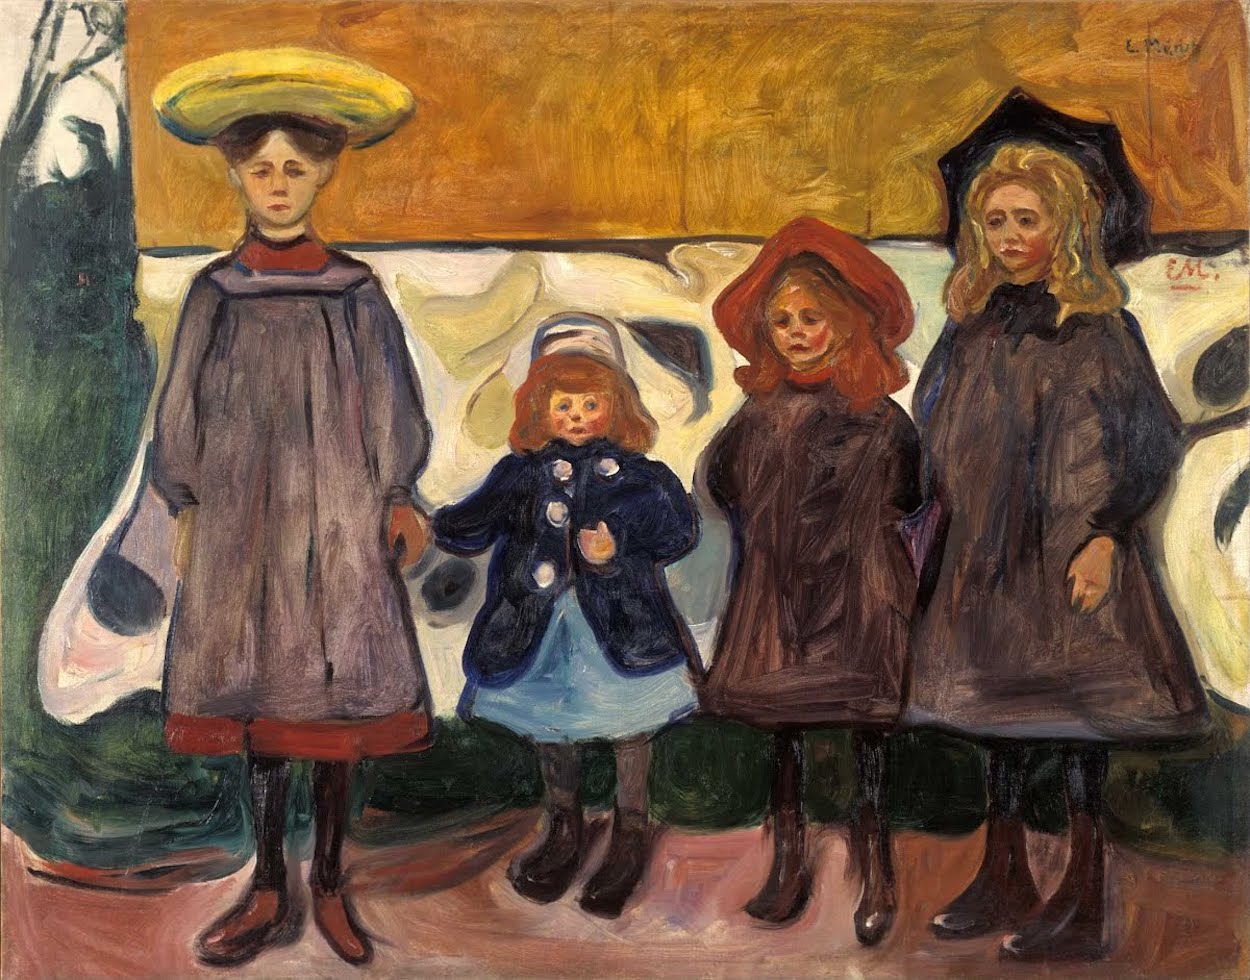 Patru fete în Åsgårdstrand by Edvard Munch - 1903 - 111 x 87 cm 